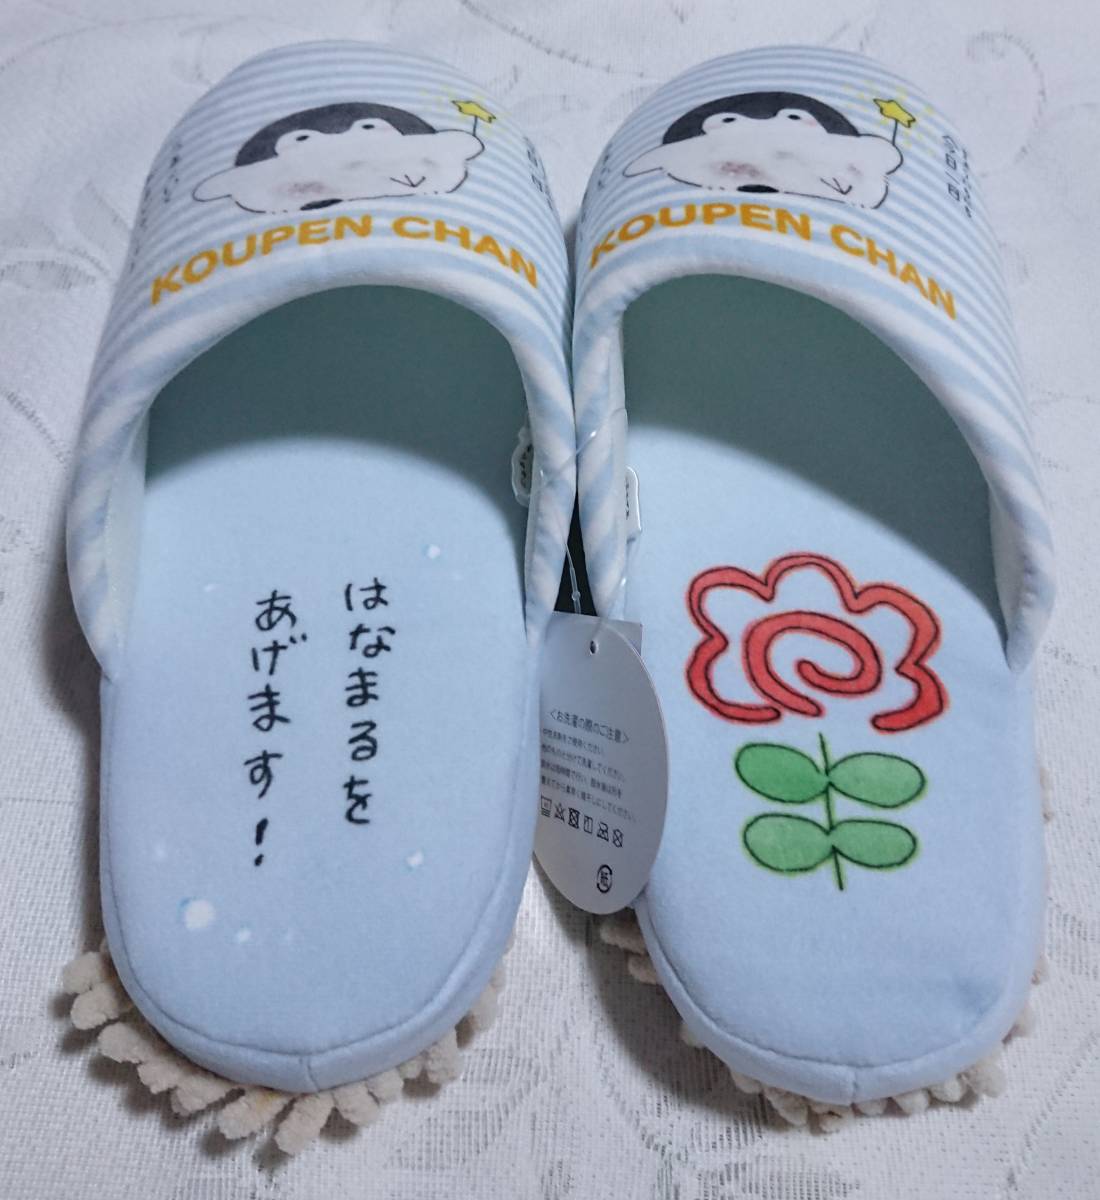 kou авторучка Chan швабра салон обувь тапочки размер примерно 25. новый товар не использовался стоимость доставки 350 иен ~